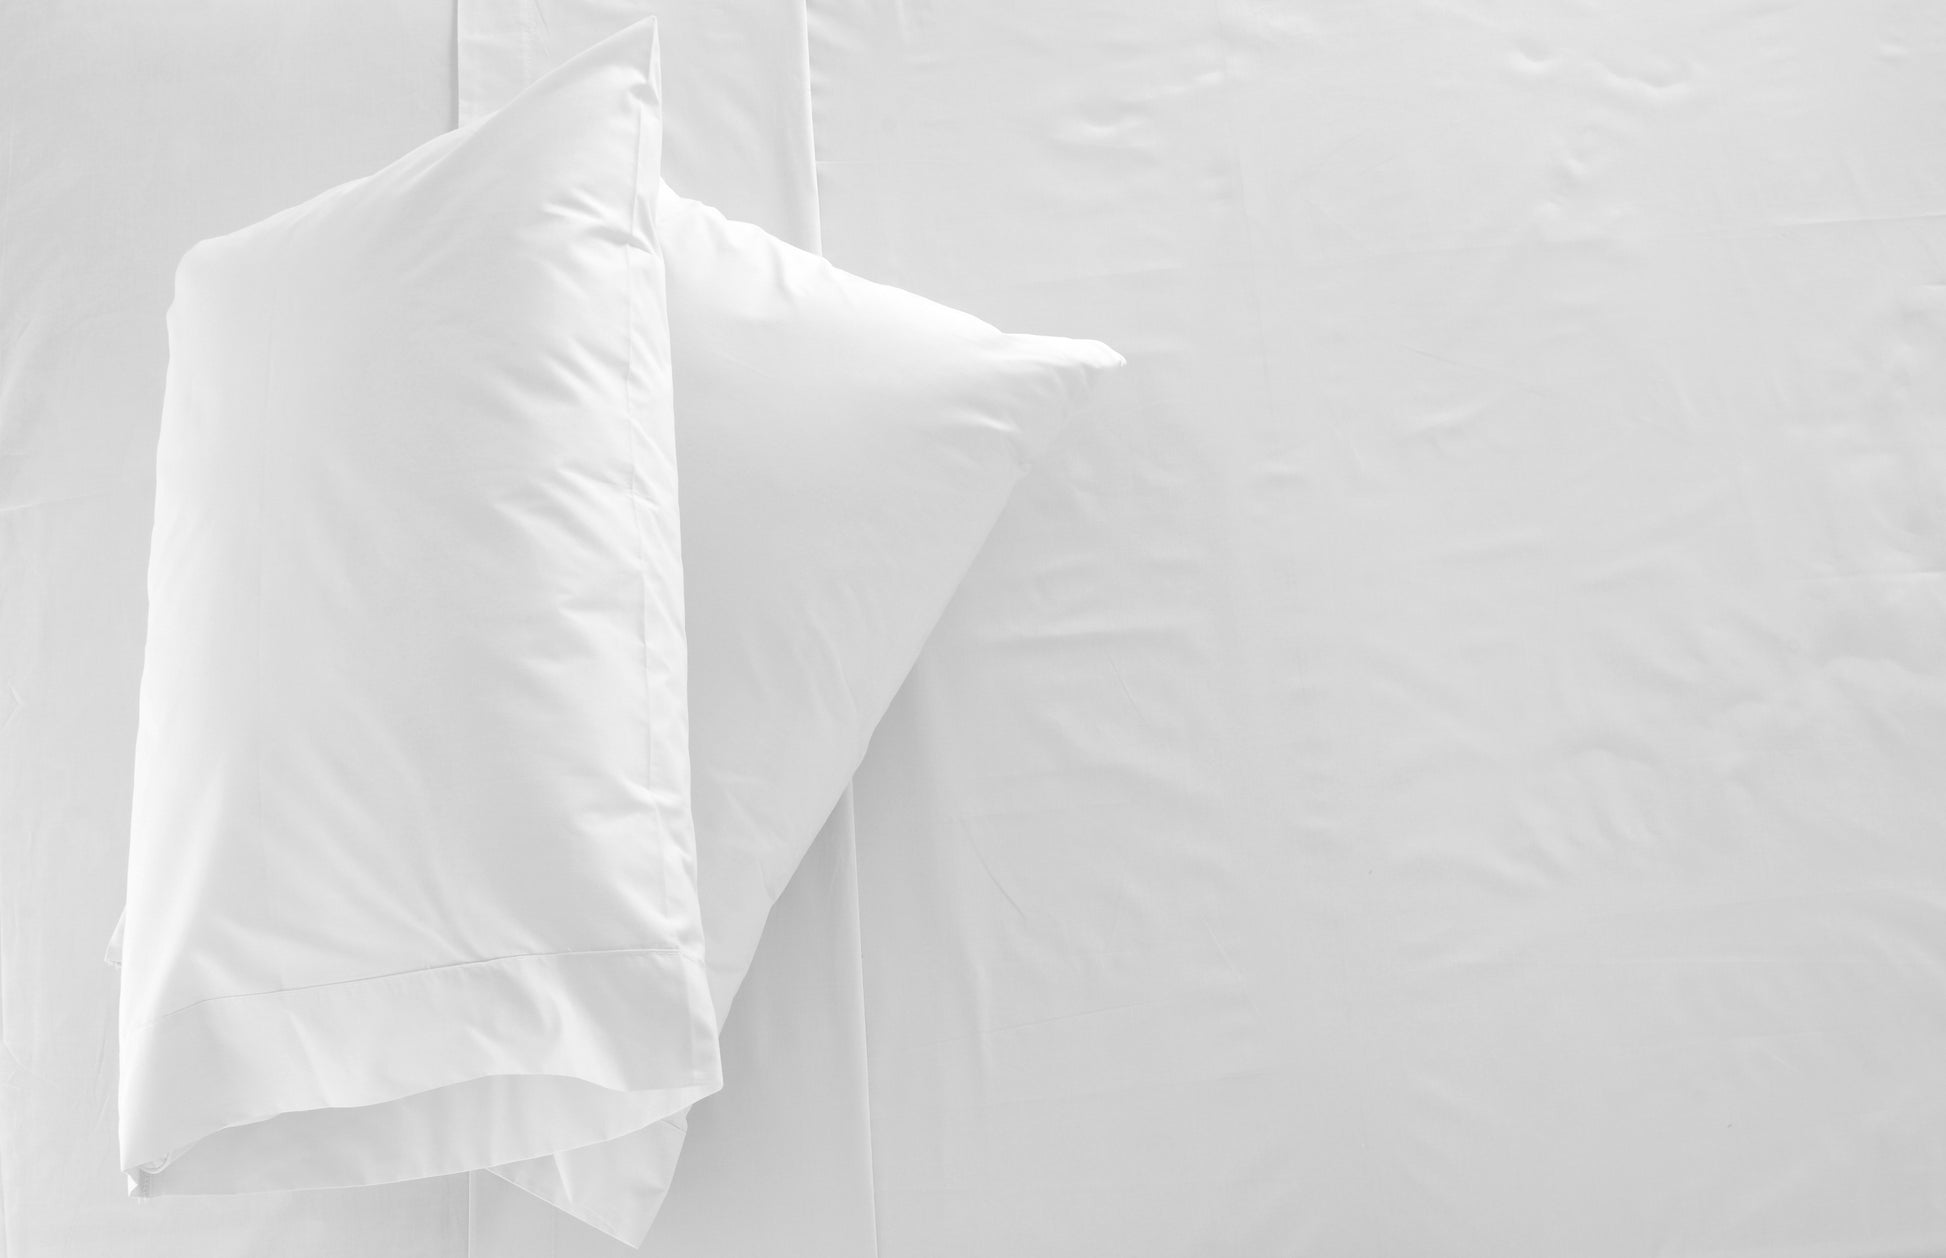 2 oreillers blanches sur un lit blanc